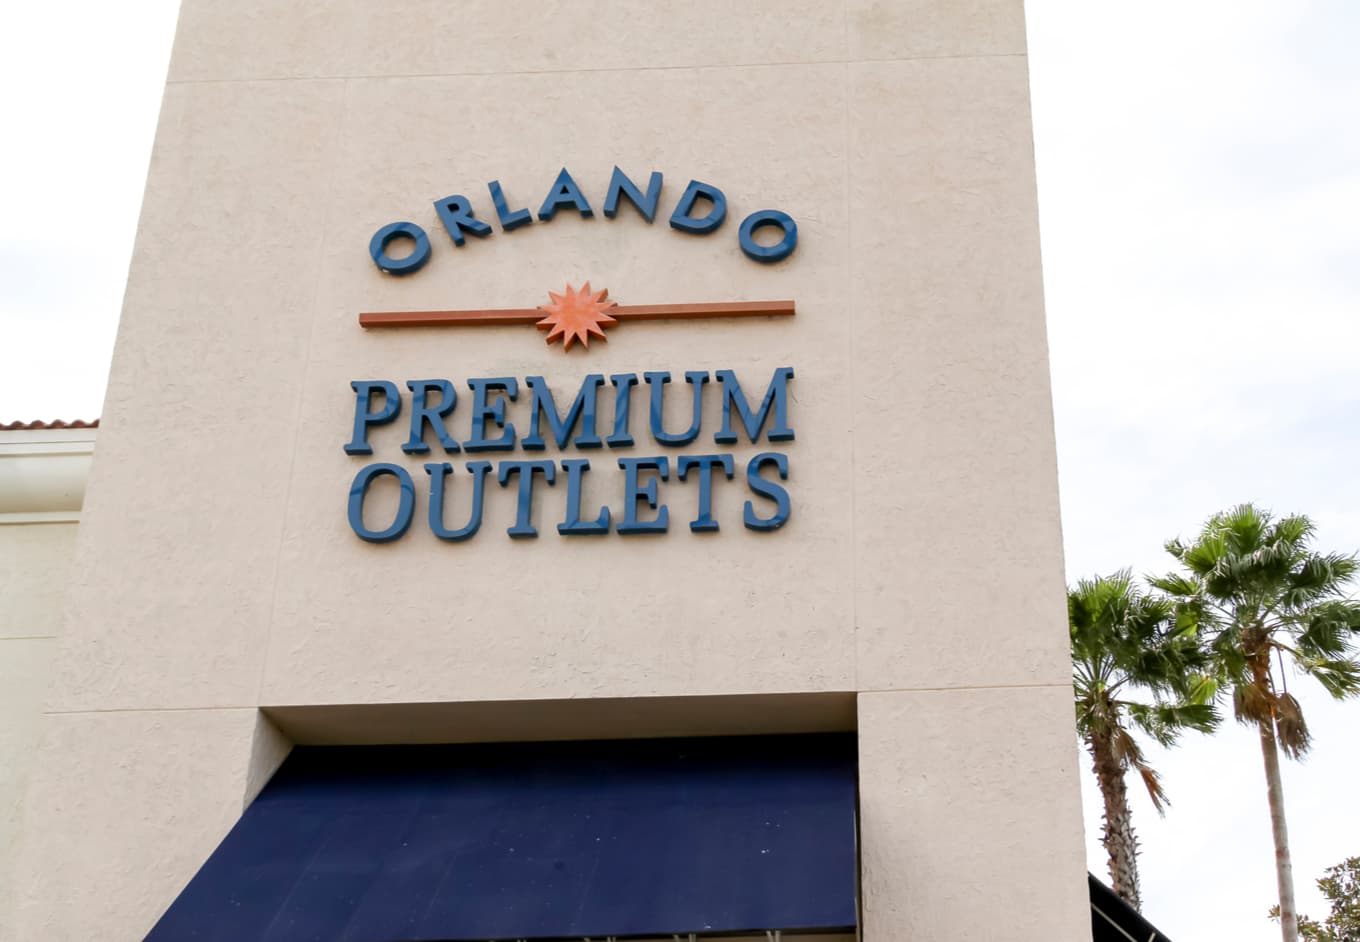 Top 5 shopping areas in Orlando